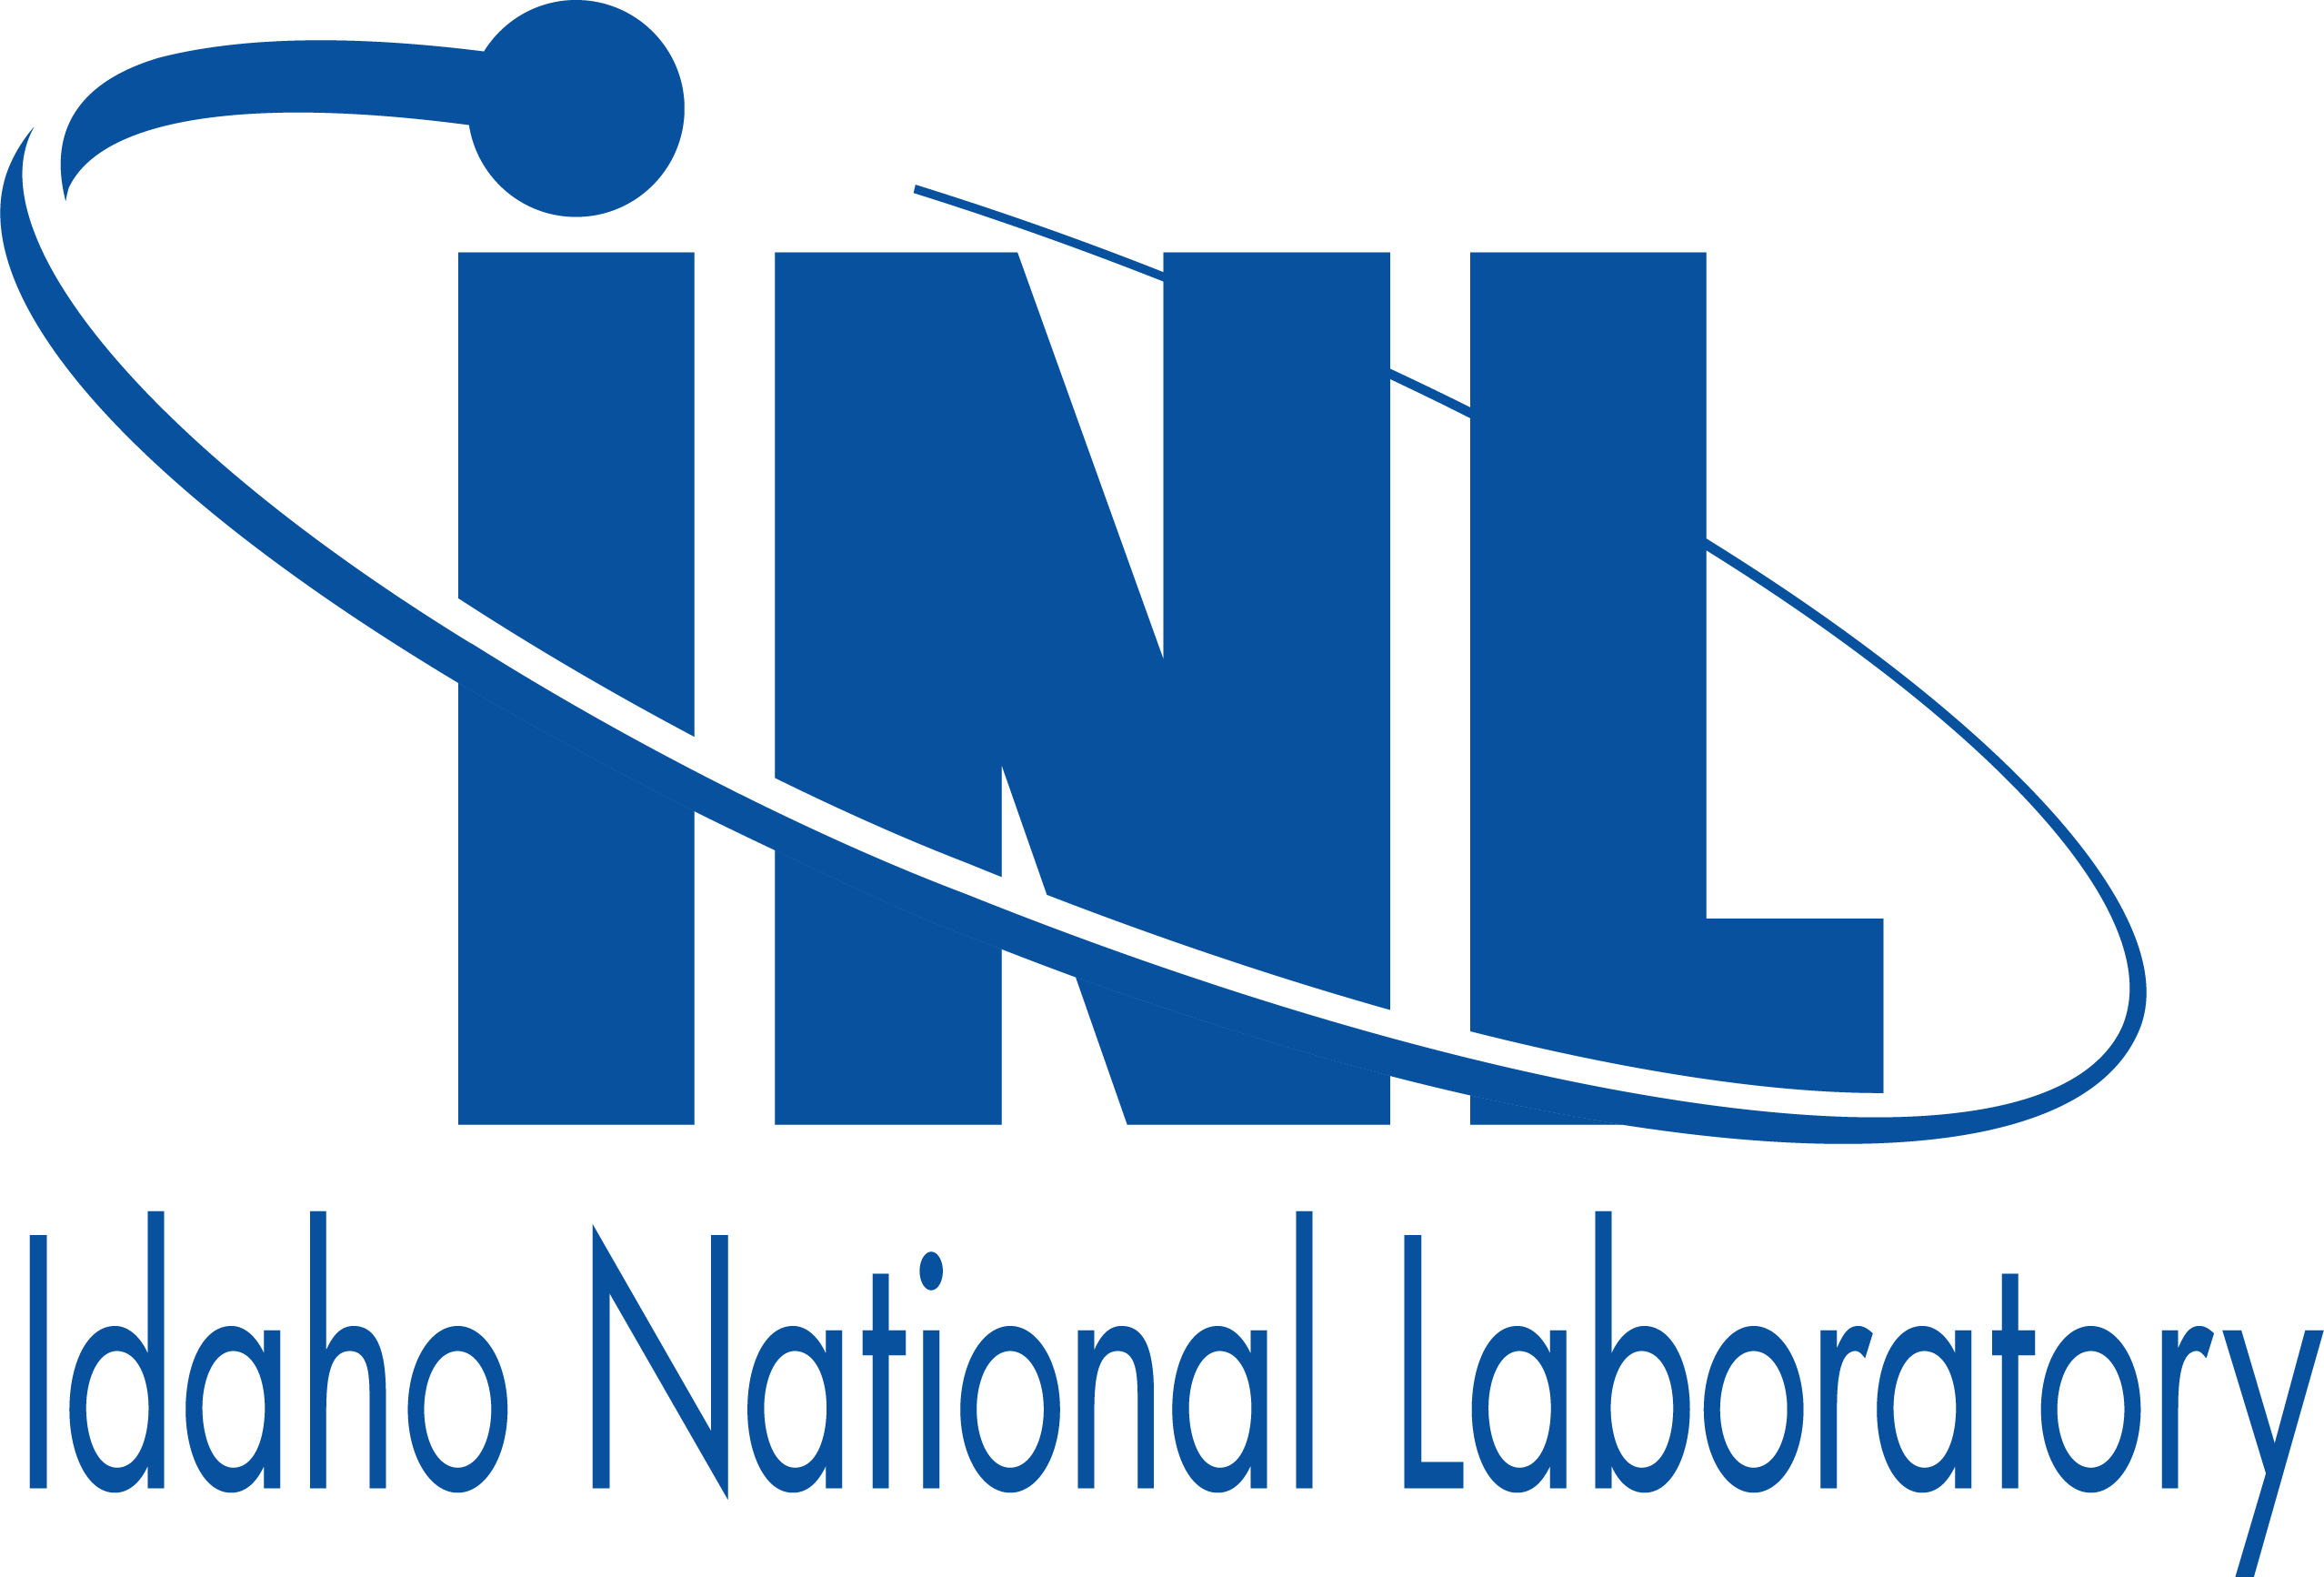 Idaho National Laboratory/Battelle Energy Alliance LLC